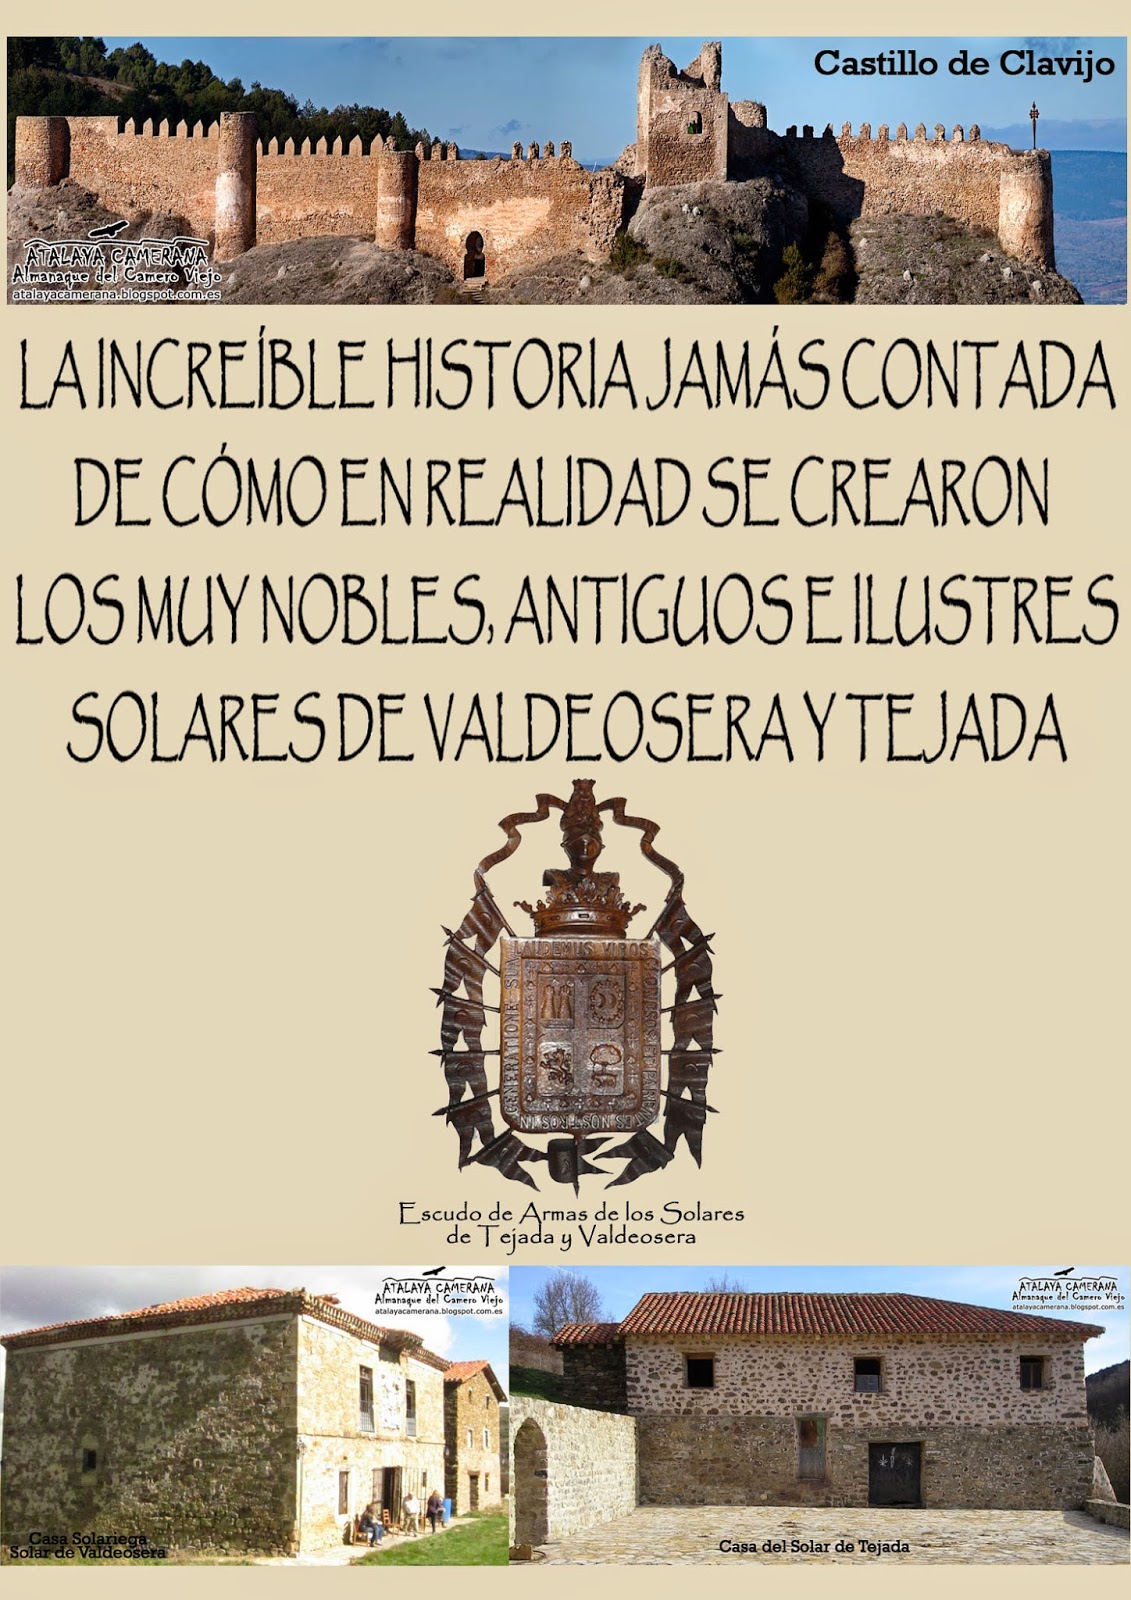 "La increíble historia jamás contada de cómo se crearon los Muy Nobles, Antiguos e Ilustres Solares de Valdeosera y Tejada"